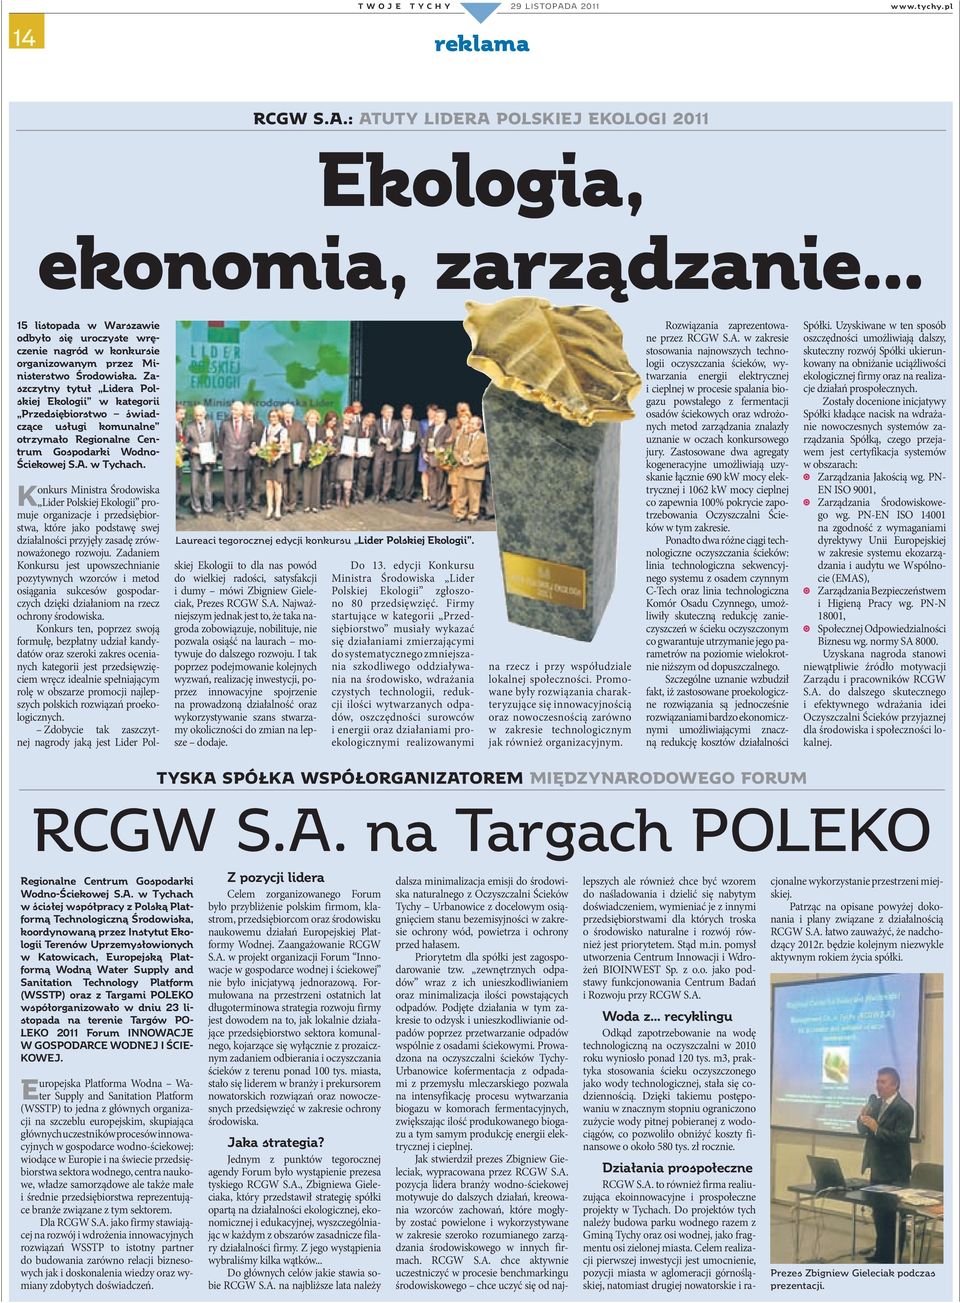 Zaszczytny tytuł Lidera Polskiej Ekologii w kategorii Przedsiębiorstwo świadczące usługi komunalne otrzymało Regionalne Centrum Gospodarki Wodno- Ściekowej S.A. w Tychach.